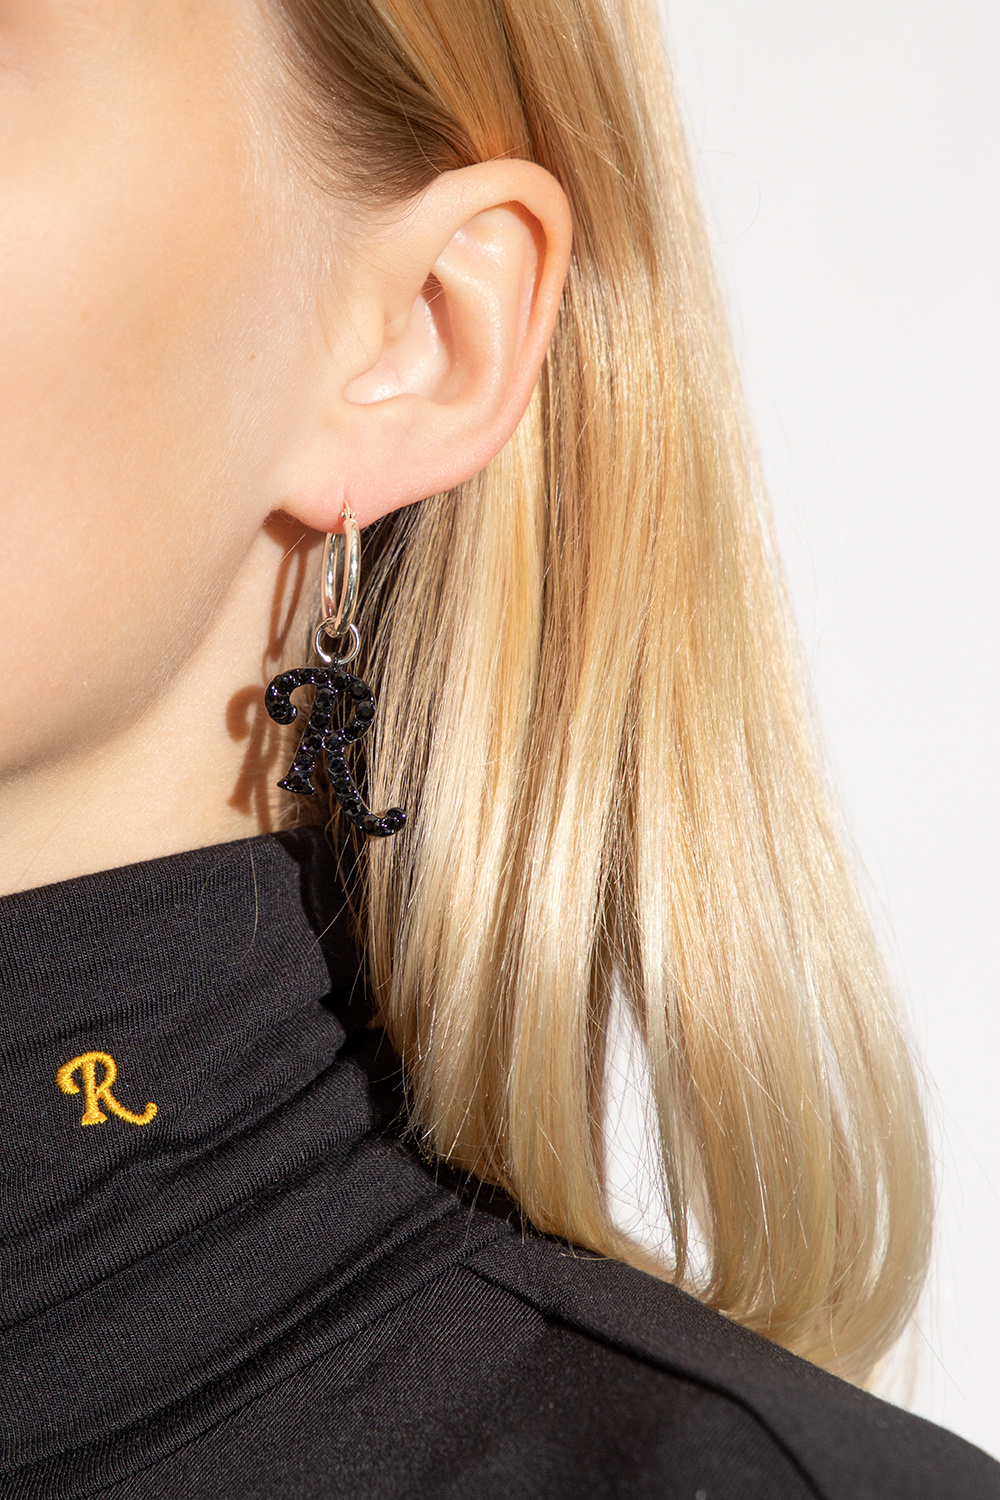 Gold Hoop earrings with logo Versace - Vitkac GB